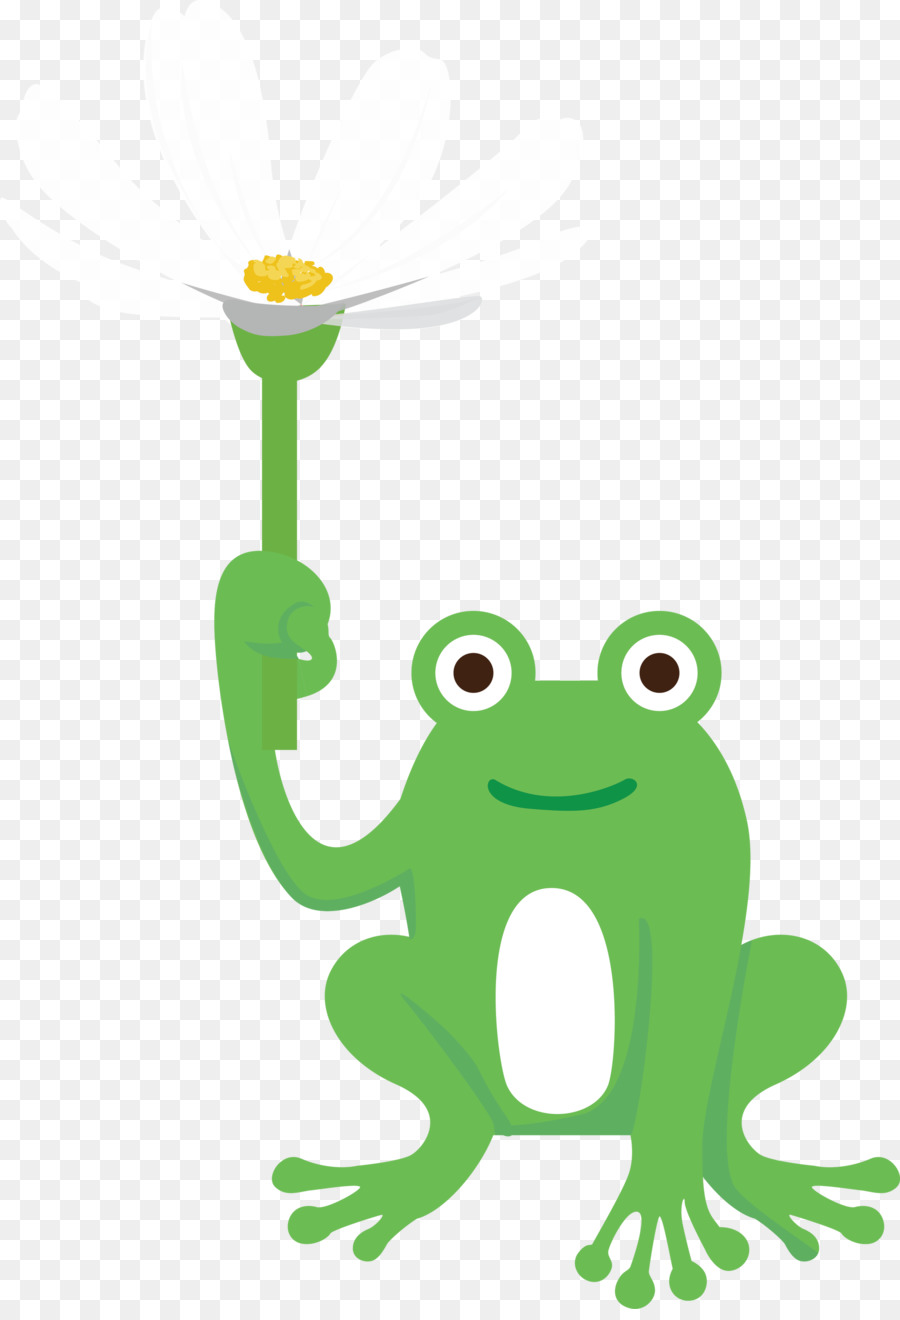 ếch cây ếch phim hoạt hình đồng hồ xanh - 